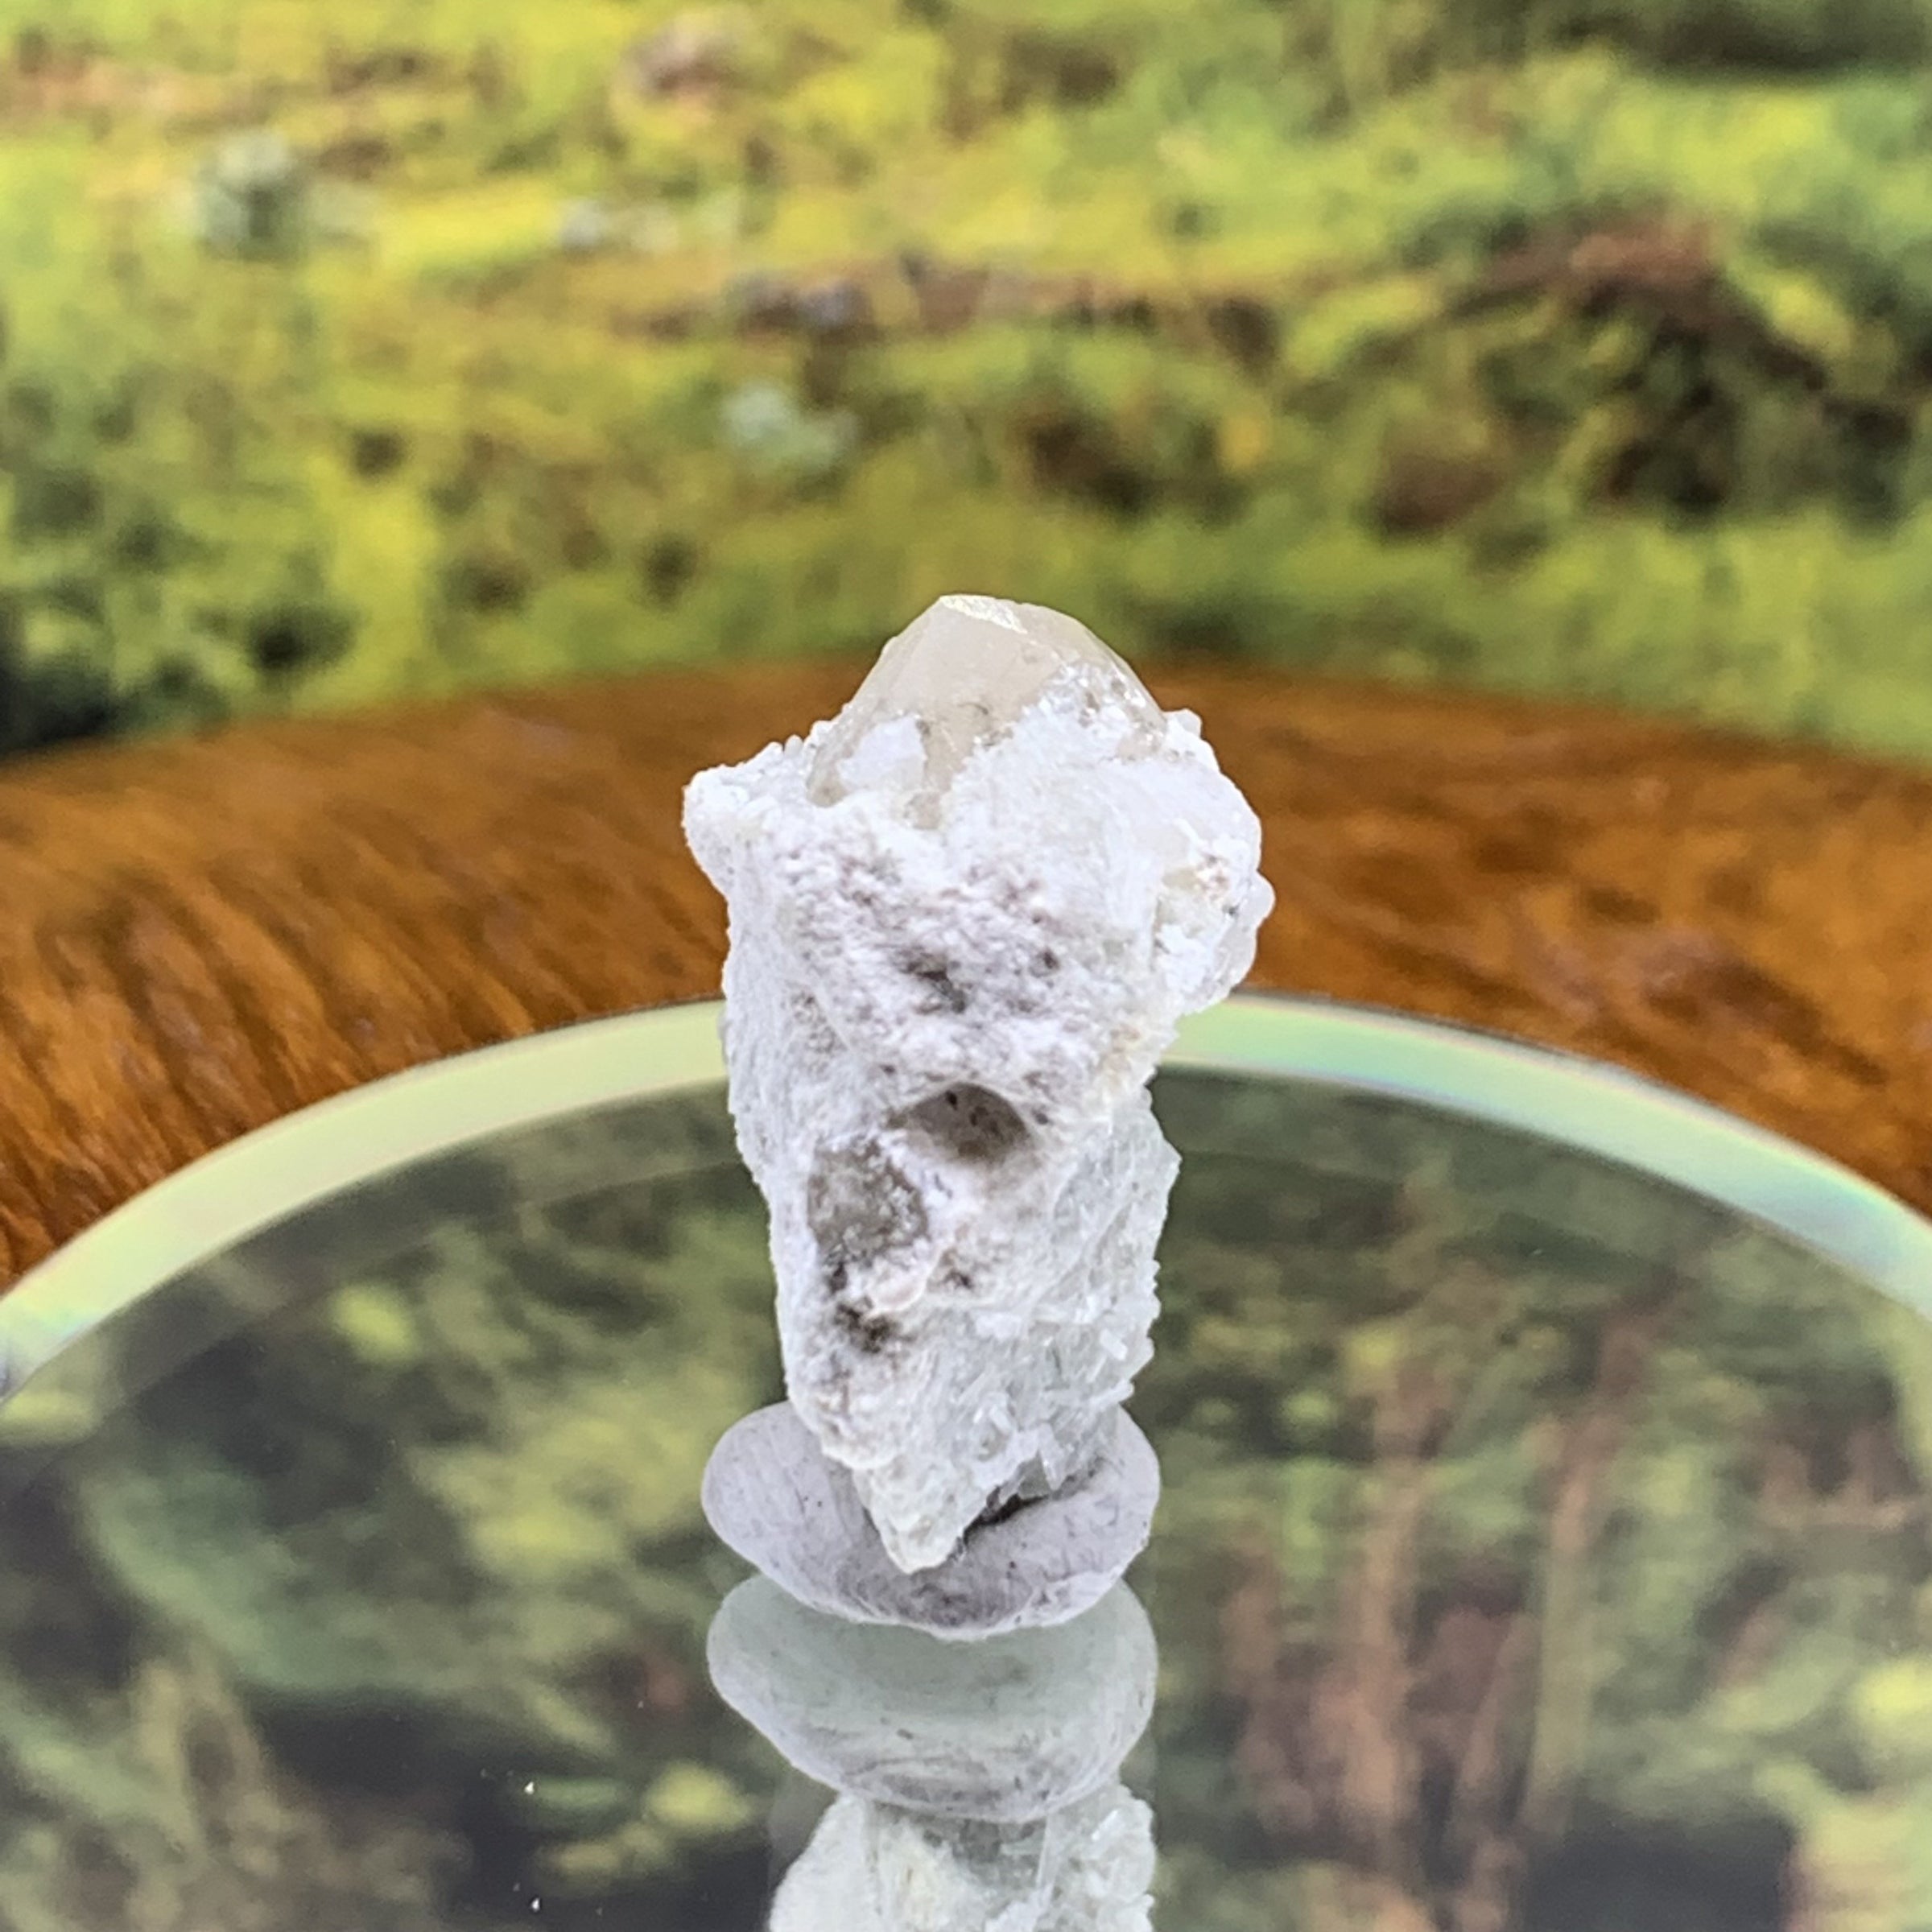 Phenacite Crystals in Matrix from Colorado CPH62